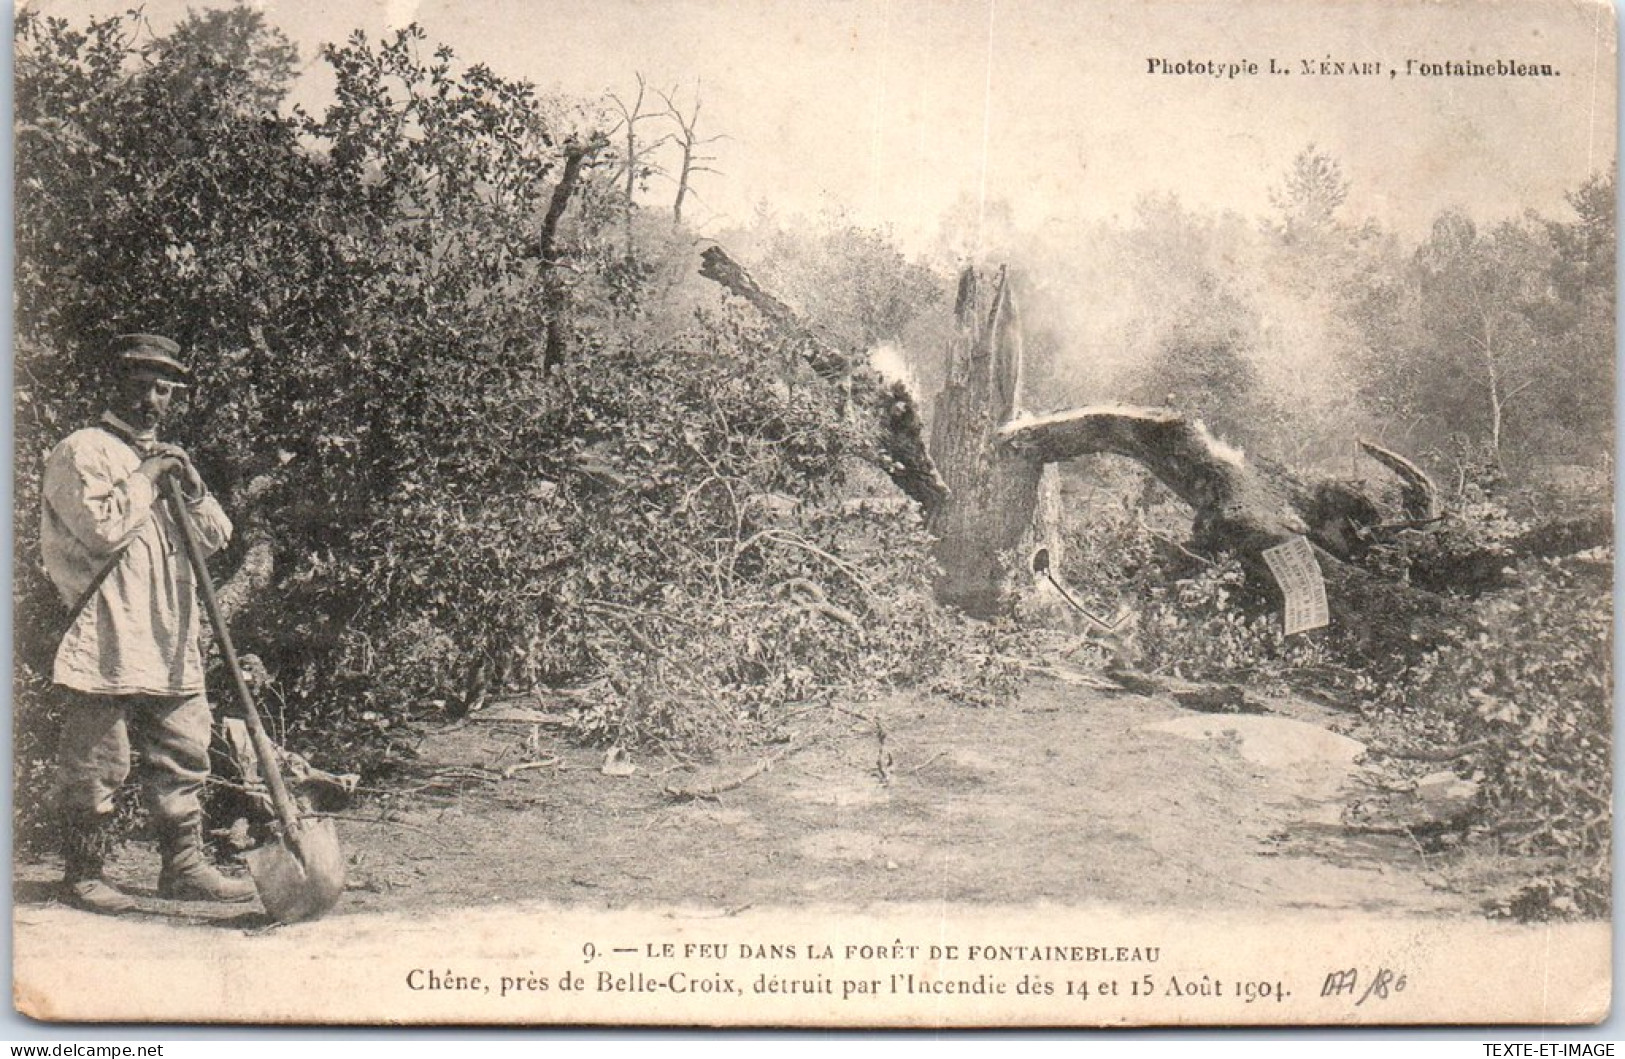 77 FONTAINEBLEAU - Aincendie De Foret 1904 - Un Chene - Fontainebleau